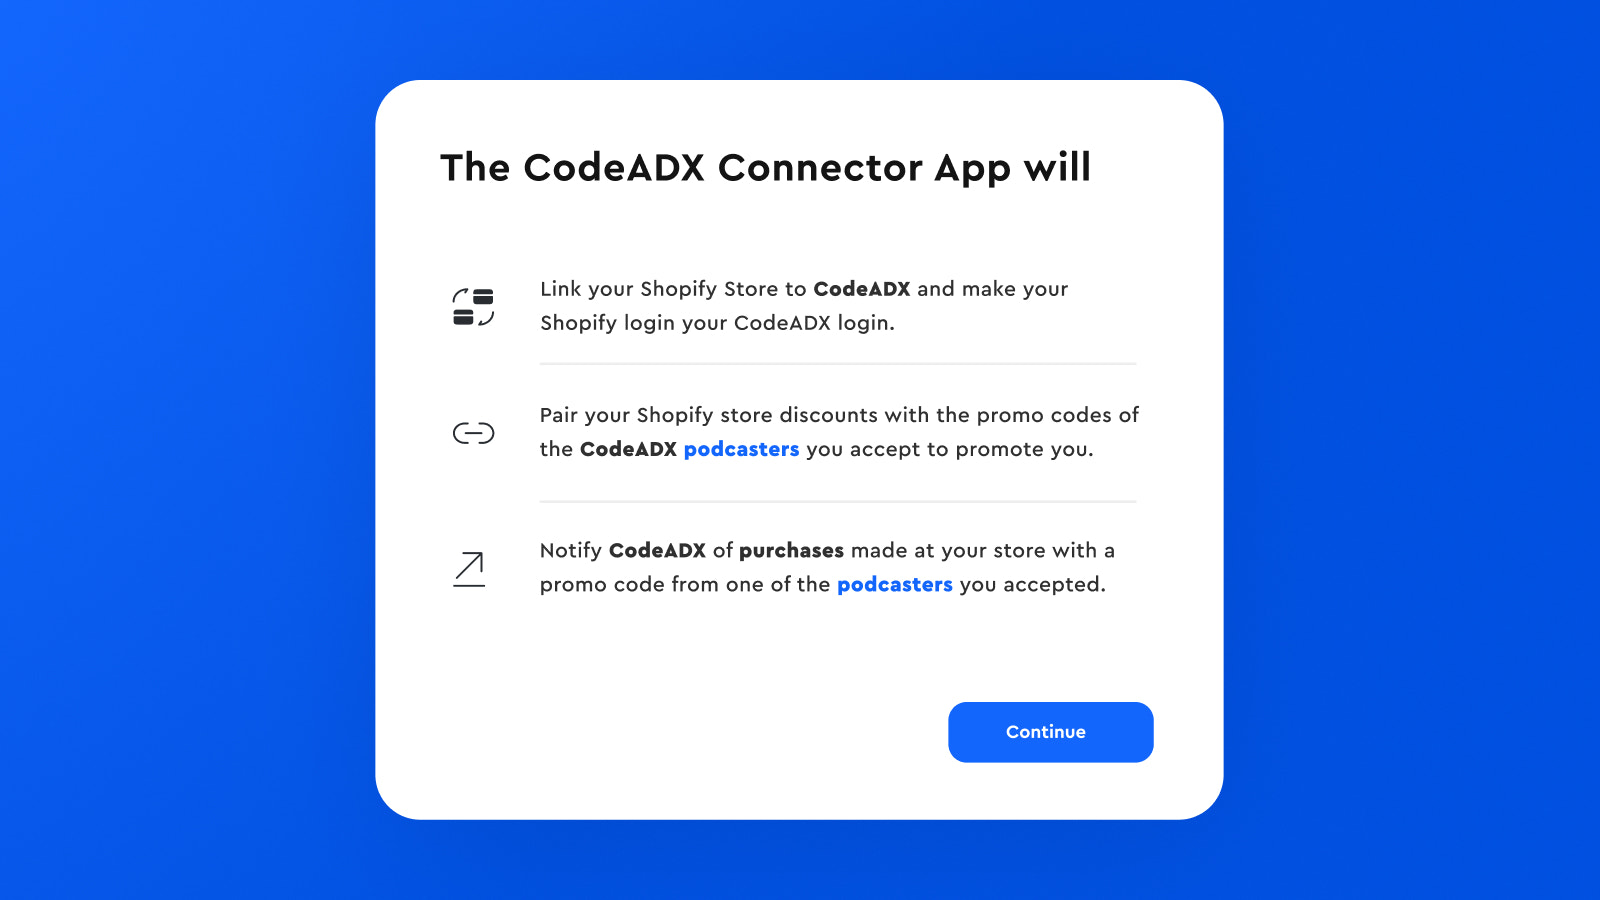 Vad kommer CodeADX Connector App att göra